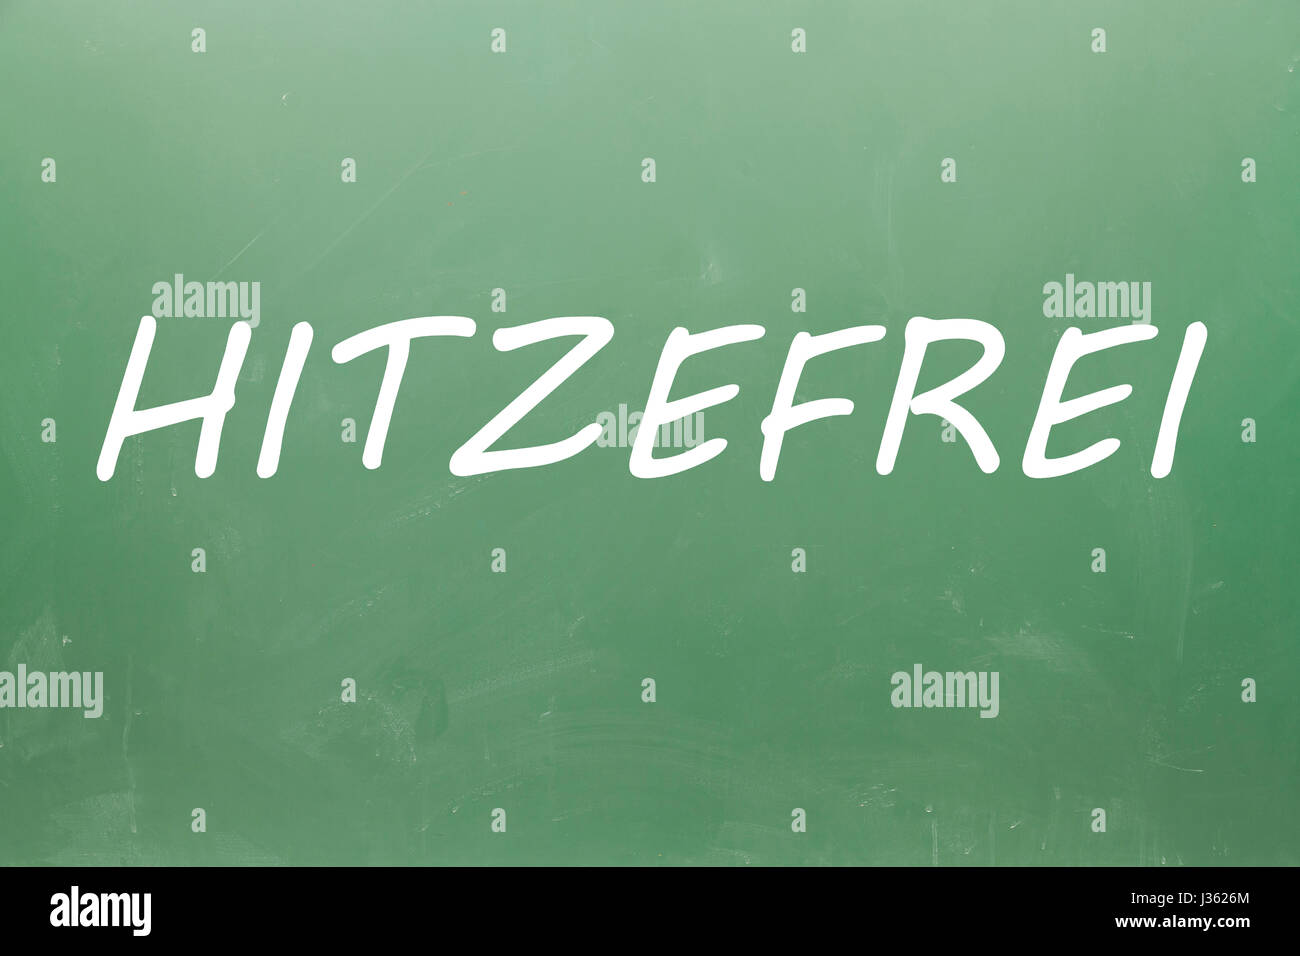 Hitzefrei German